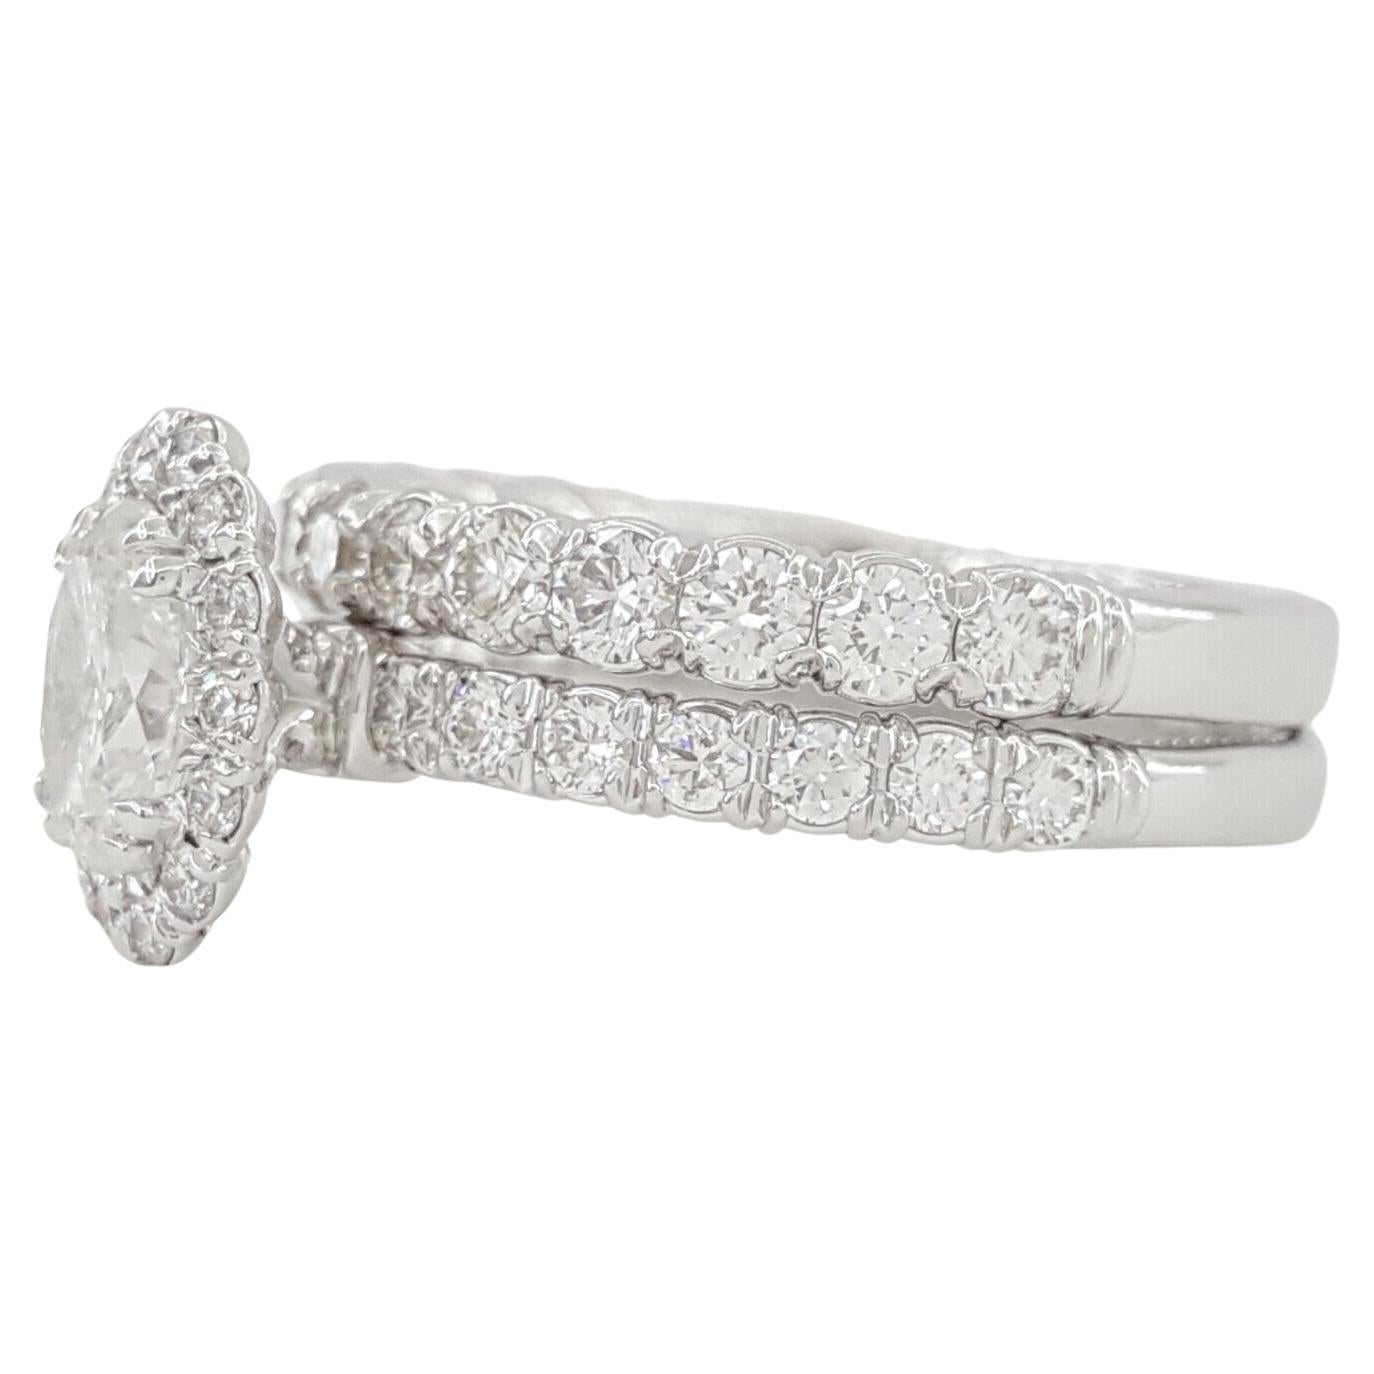 Verragio-954OV18 1.95 ct poids total diamant ovale taille brillant Halo bague de fiançailles et de mariage 14k or blanc 